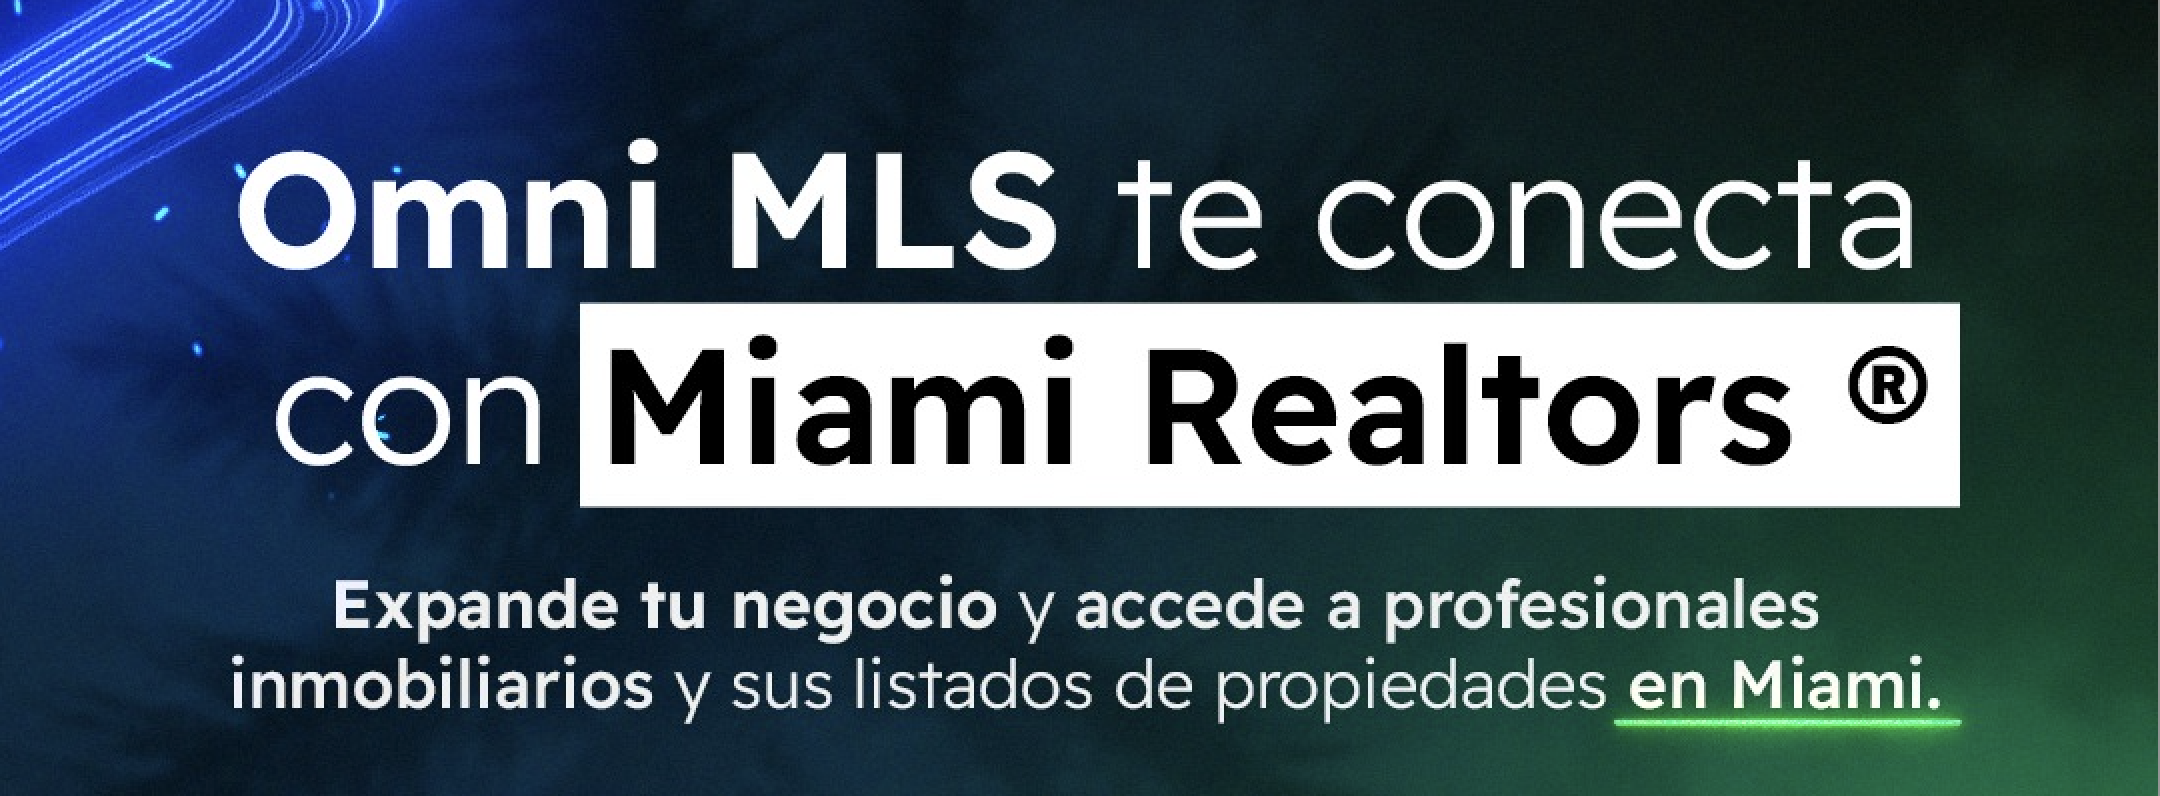 Nota de prensa: Omni MLS anuncia una completa integración con la Miami Association of Realtors ®.